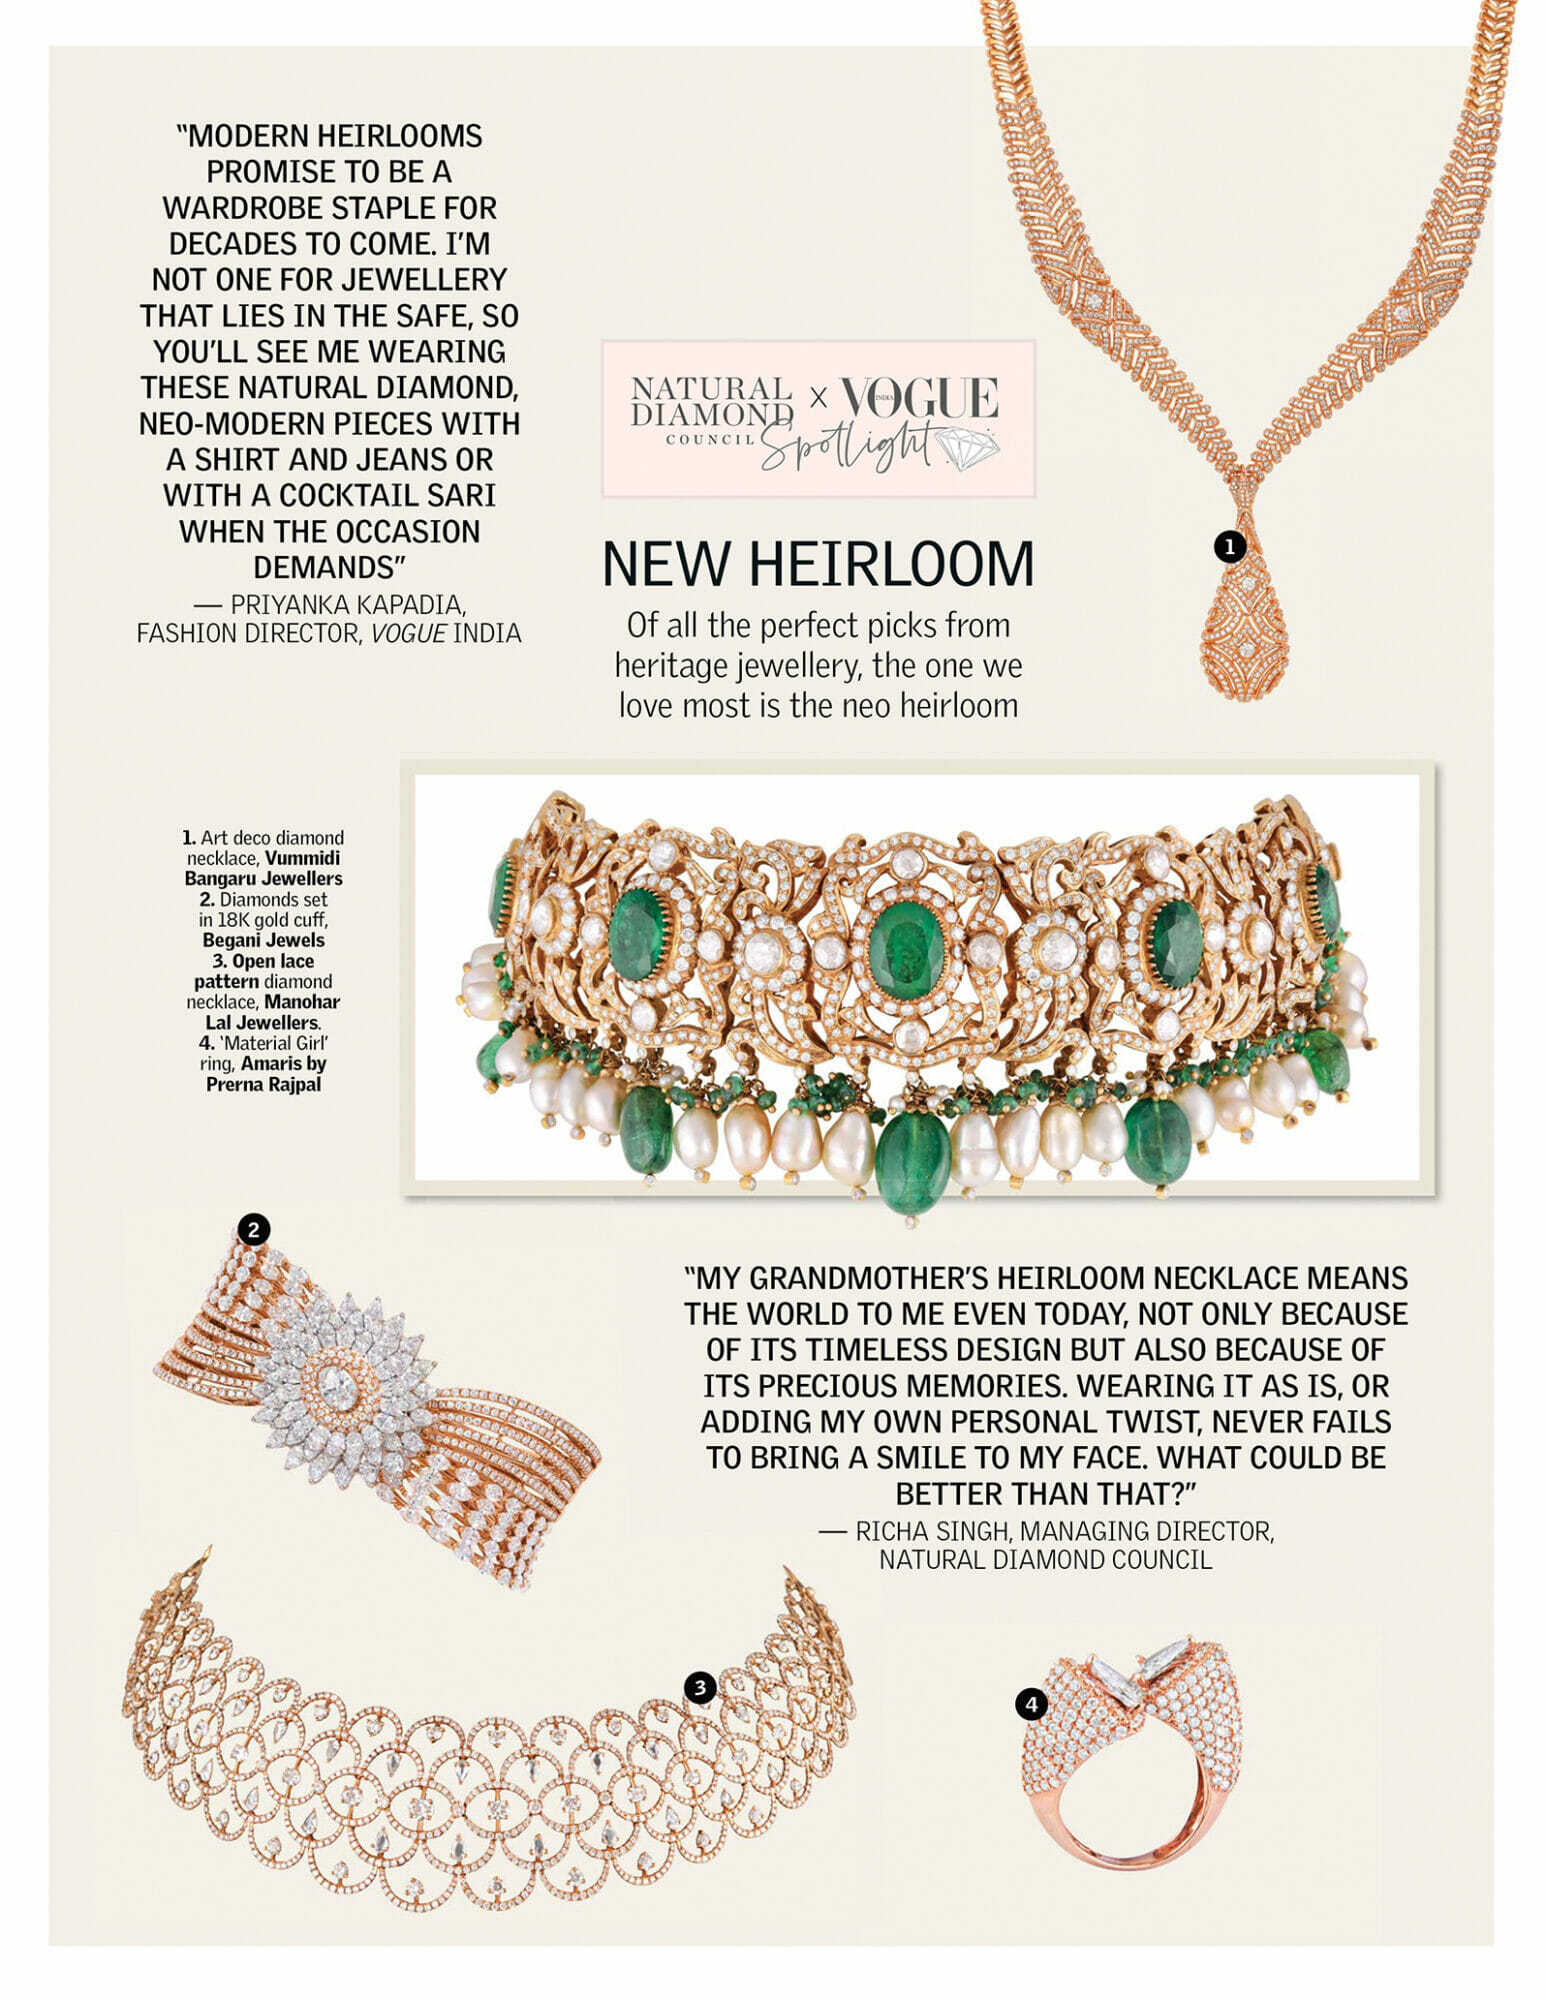 vogue-ndc-jewellery-trend-report-5